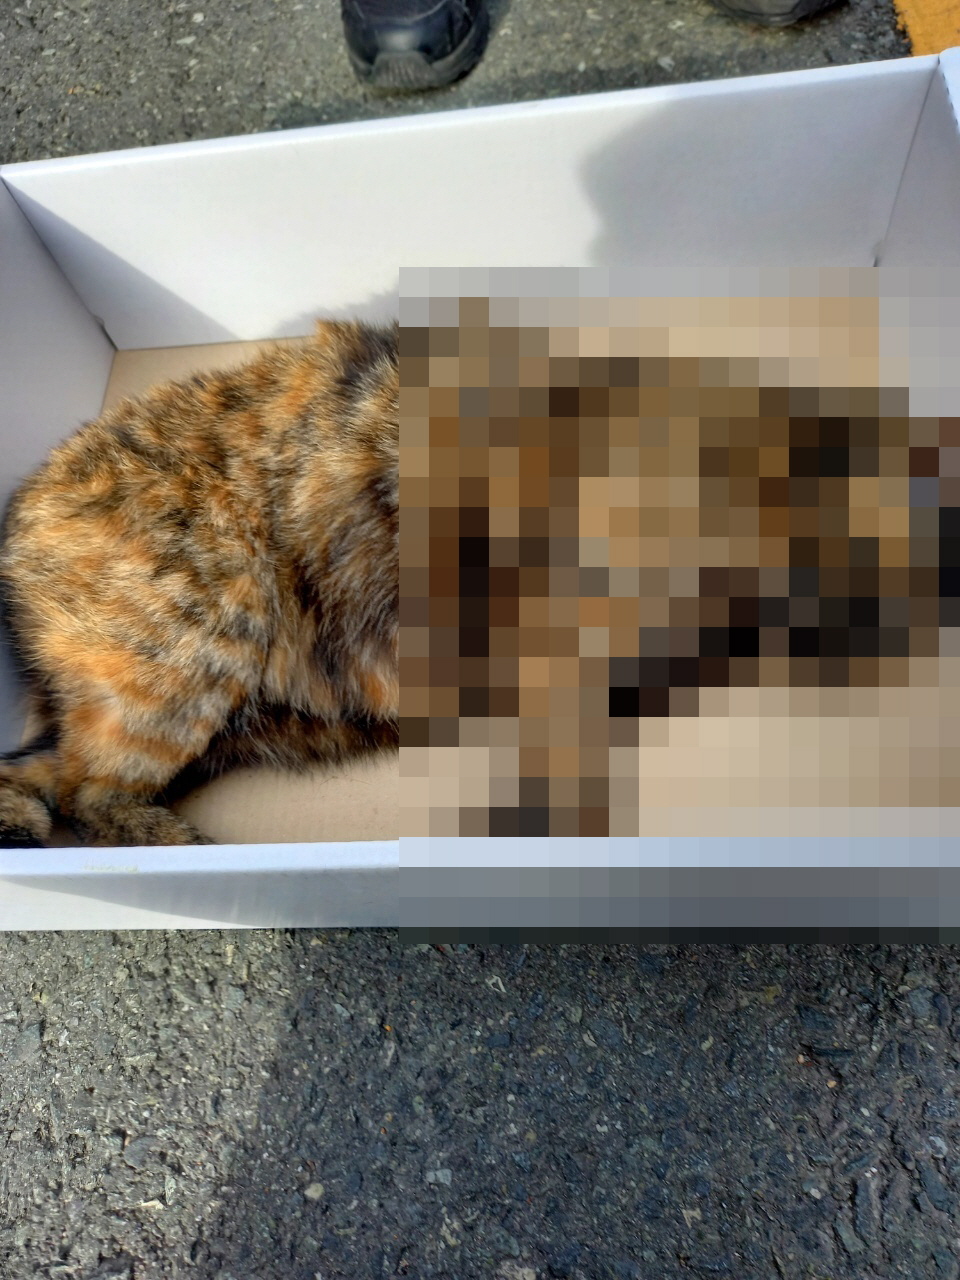 같은 기간 발견된 또다른 고양이 사체. 부검 결과 사망 원인은 두개골 골절상인 것으로 확인됐다.